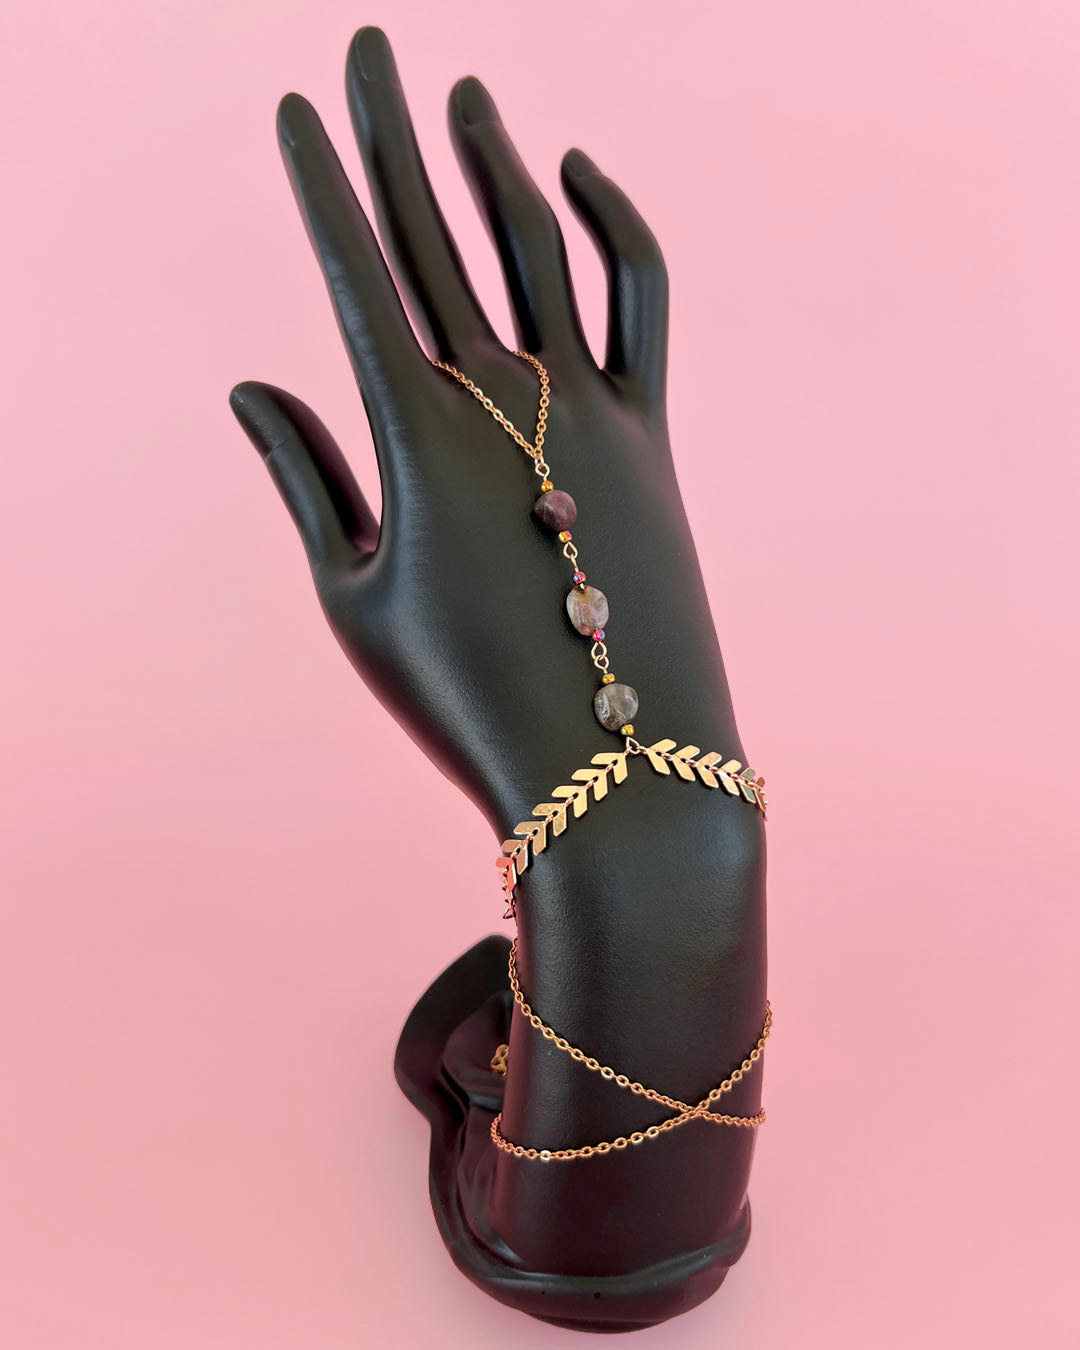 ✦ The Minimalist ✦ Tourmaline Hand Chain